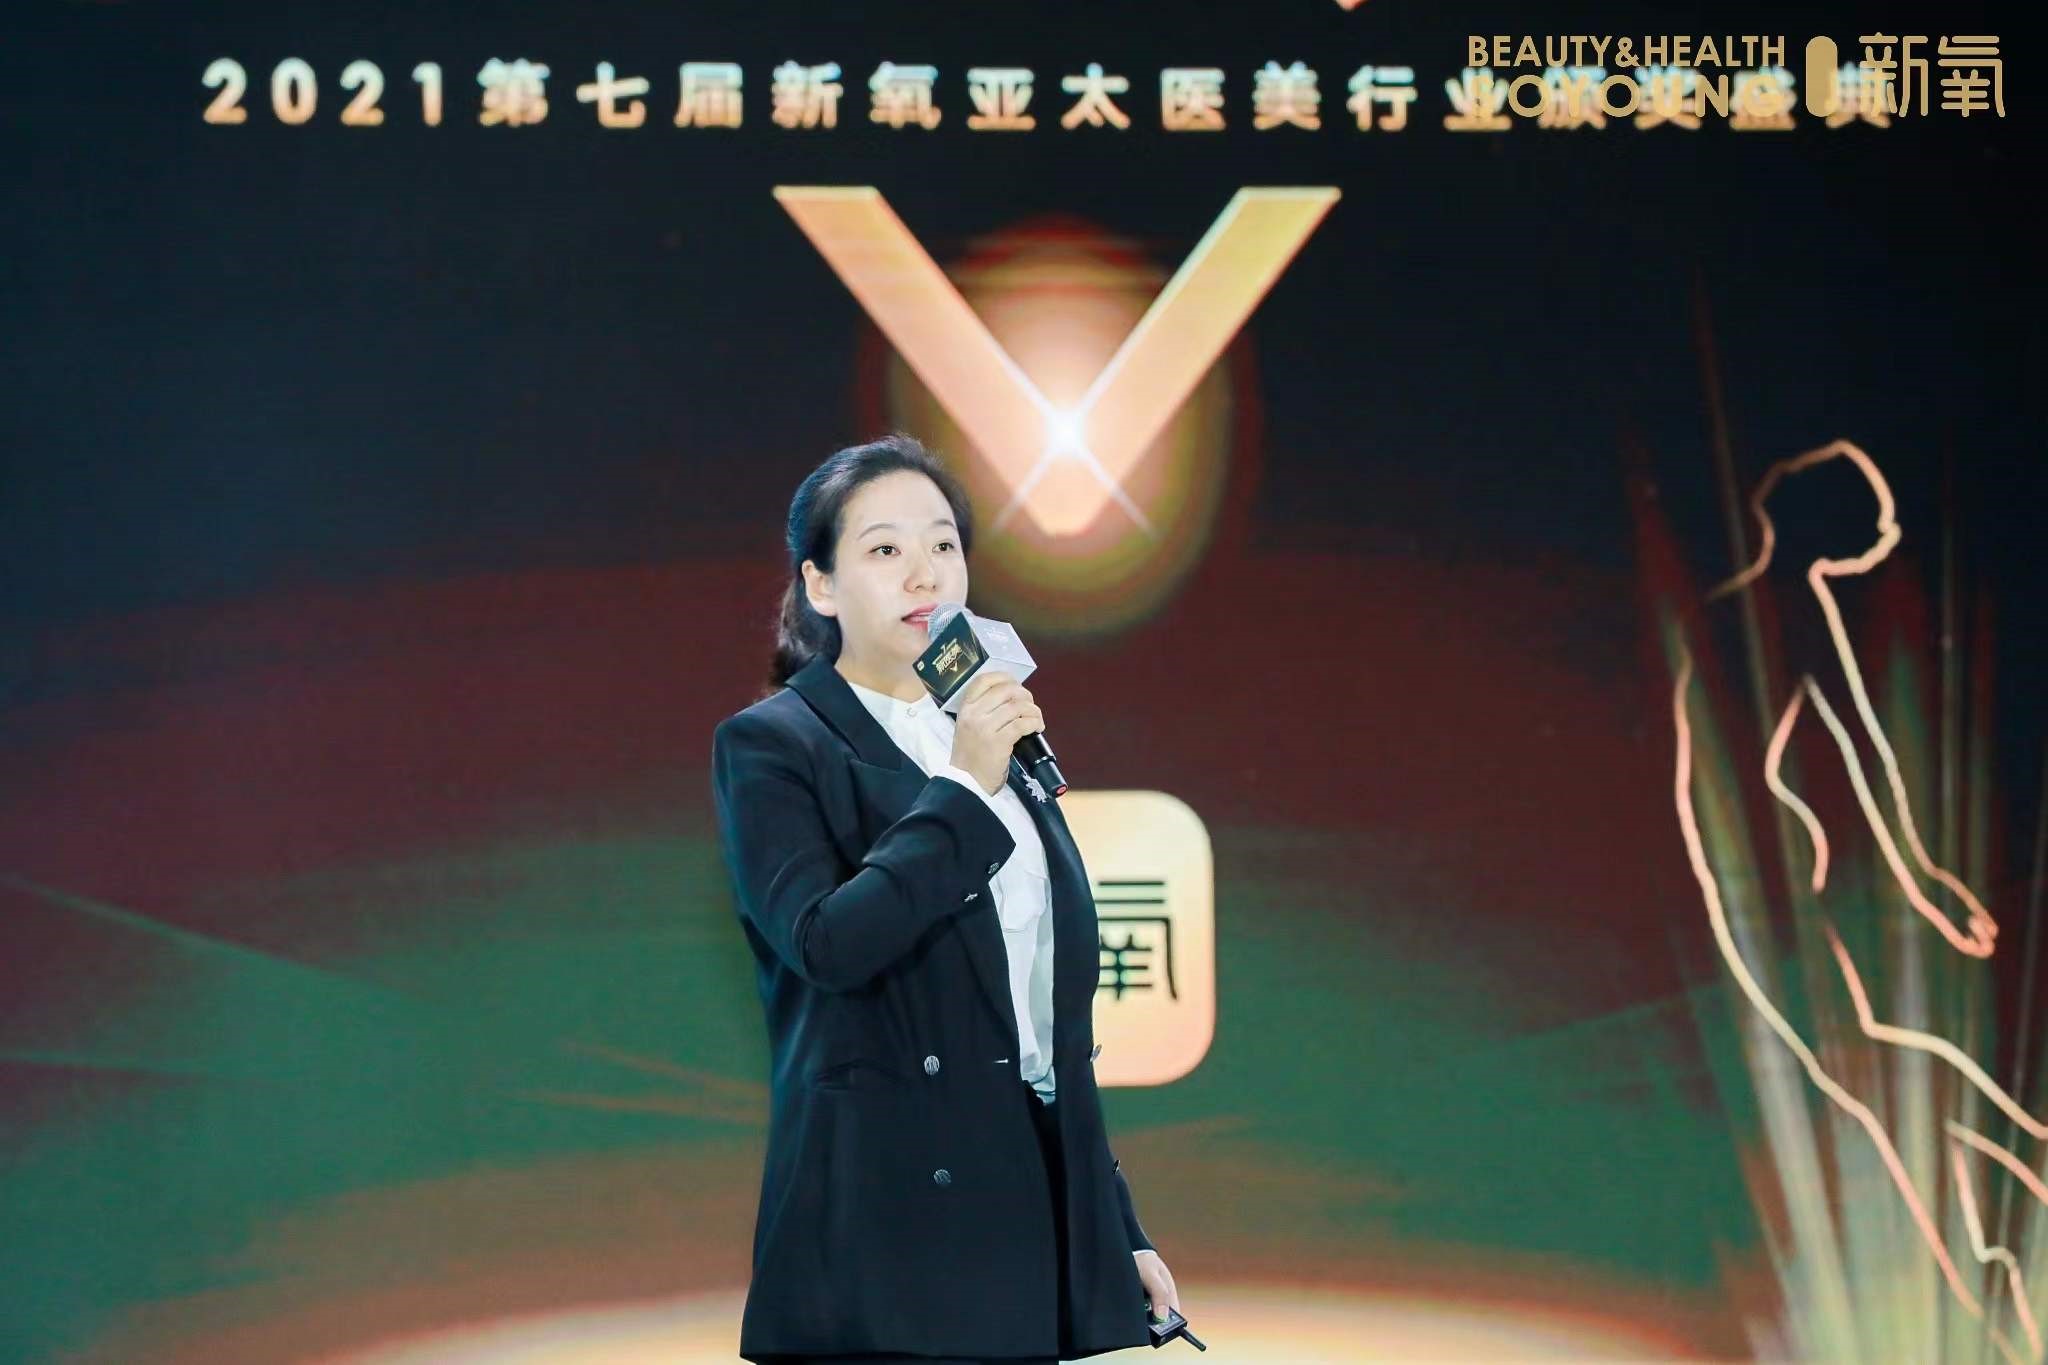 医美技术创新几何 第三届中国医美飞翔奖奖励技术突破